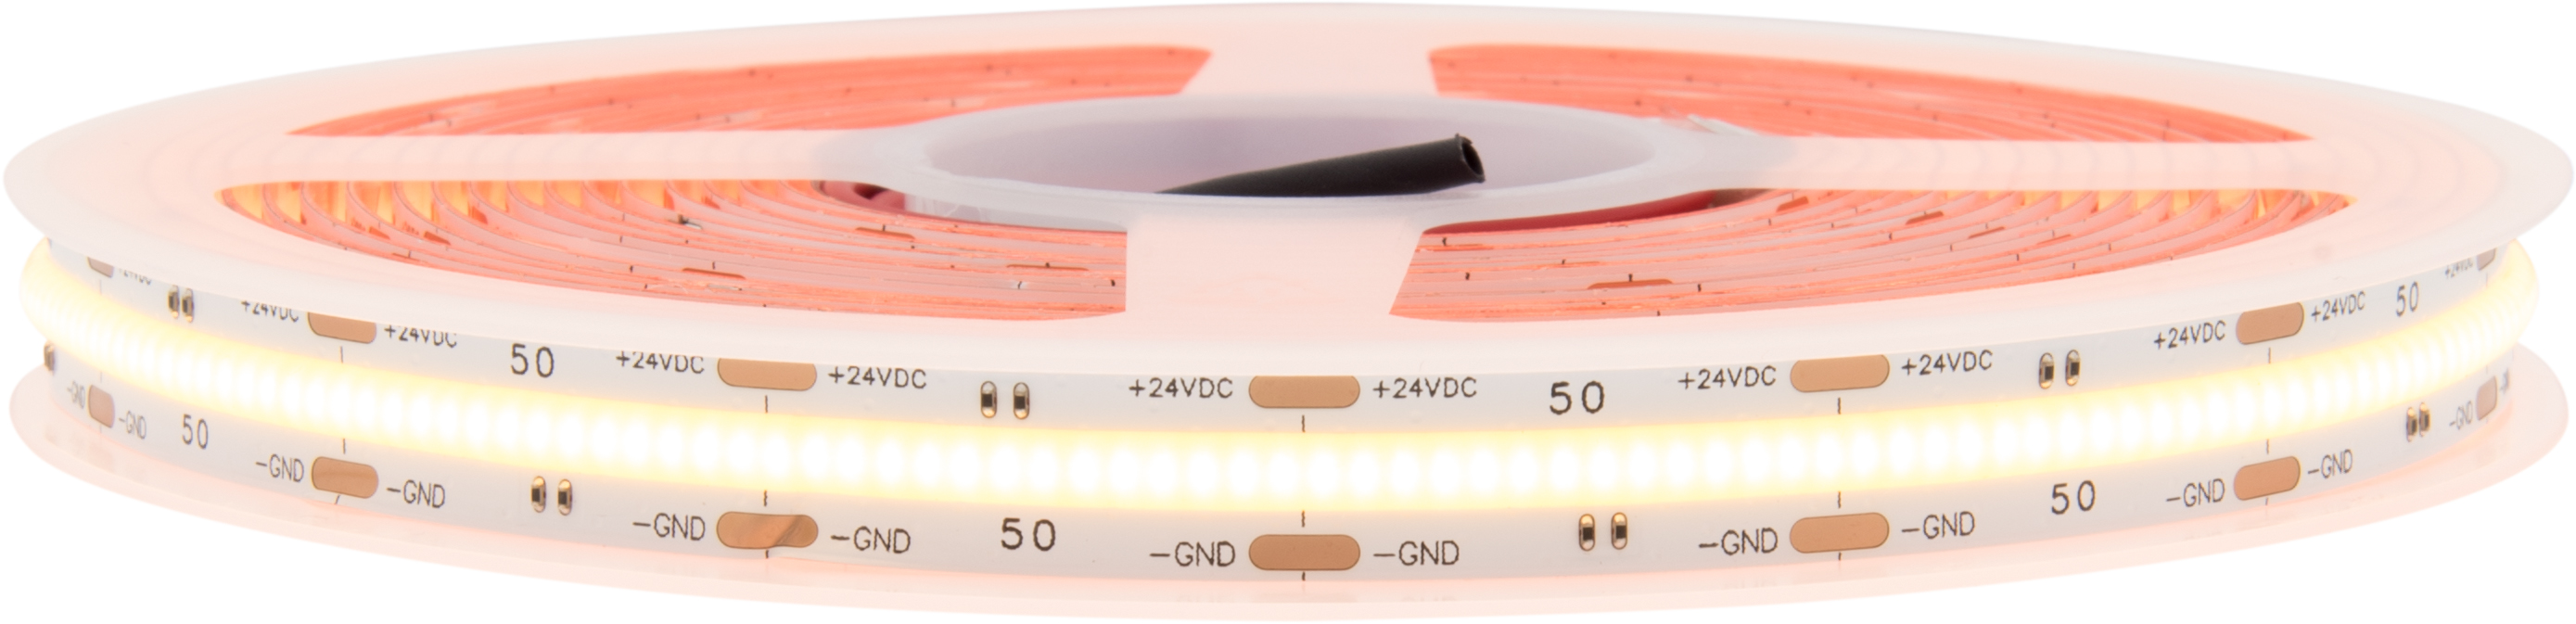 LED Flexstrip 50 COB - IP20- INDOOR | CRI/RA 90+